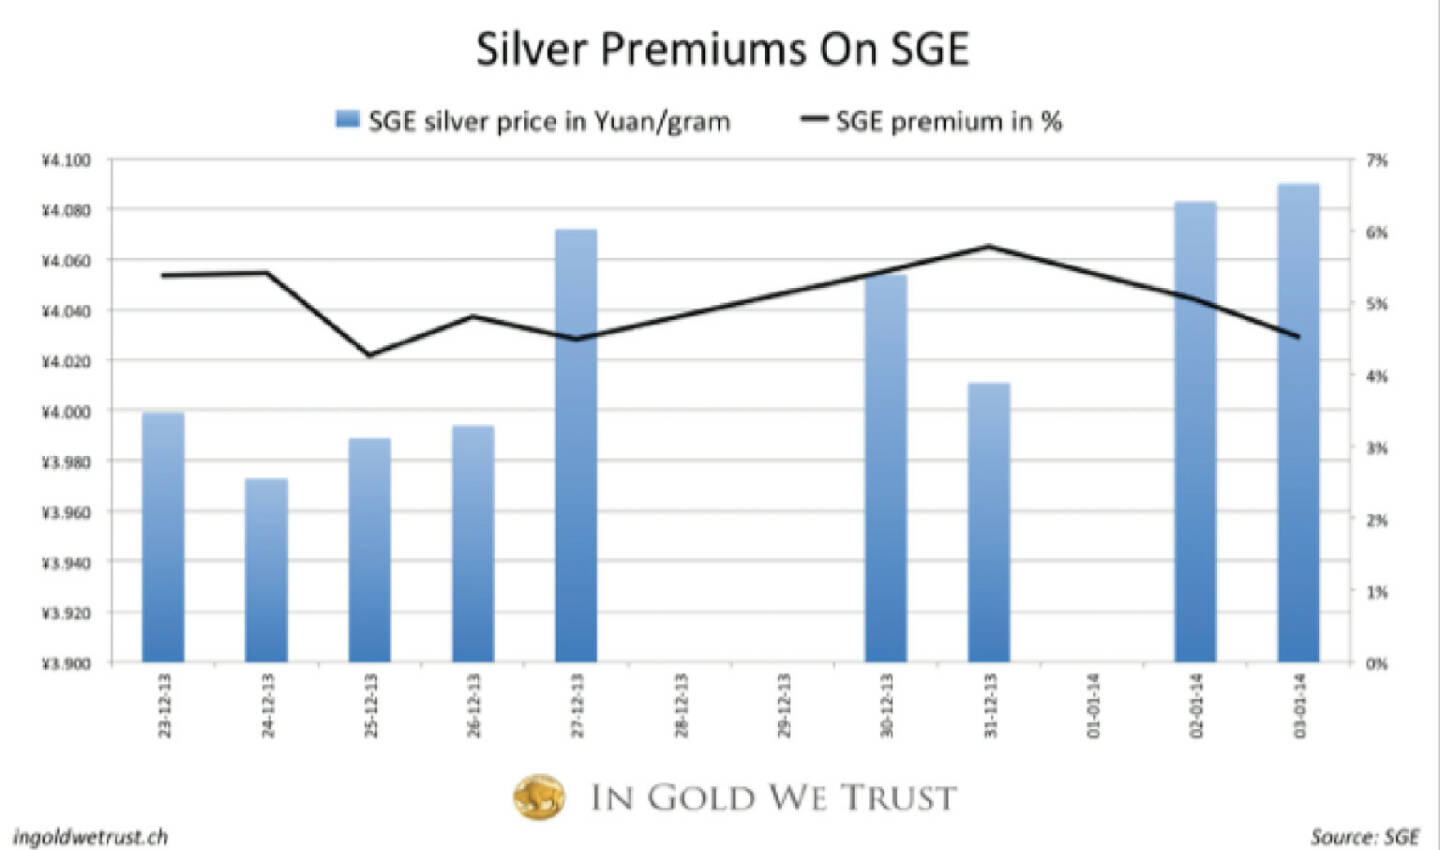 Physisches Silber wird in China mit 5% Premium gehandelt